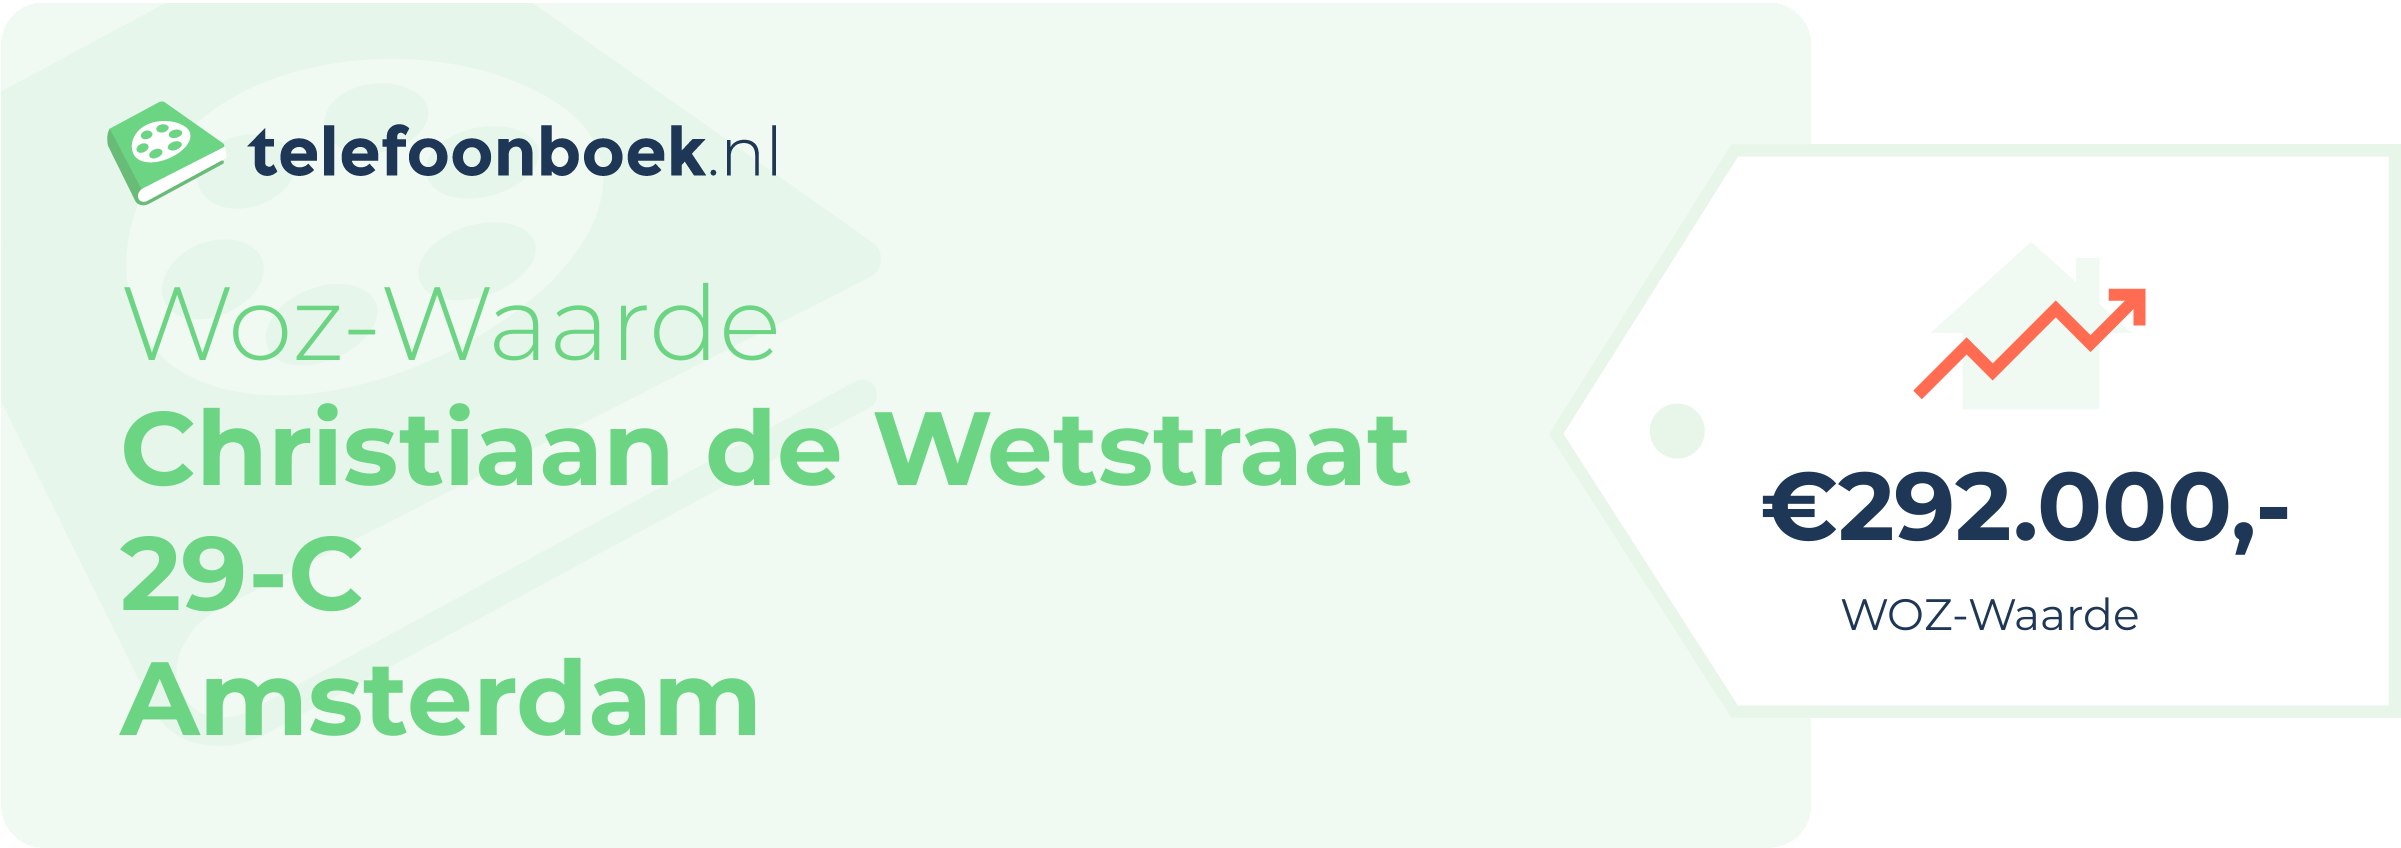 WOZ-waarde Christiaan De Wetstraat 29-C Amsterdam